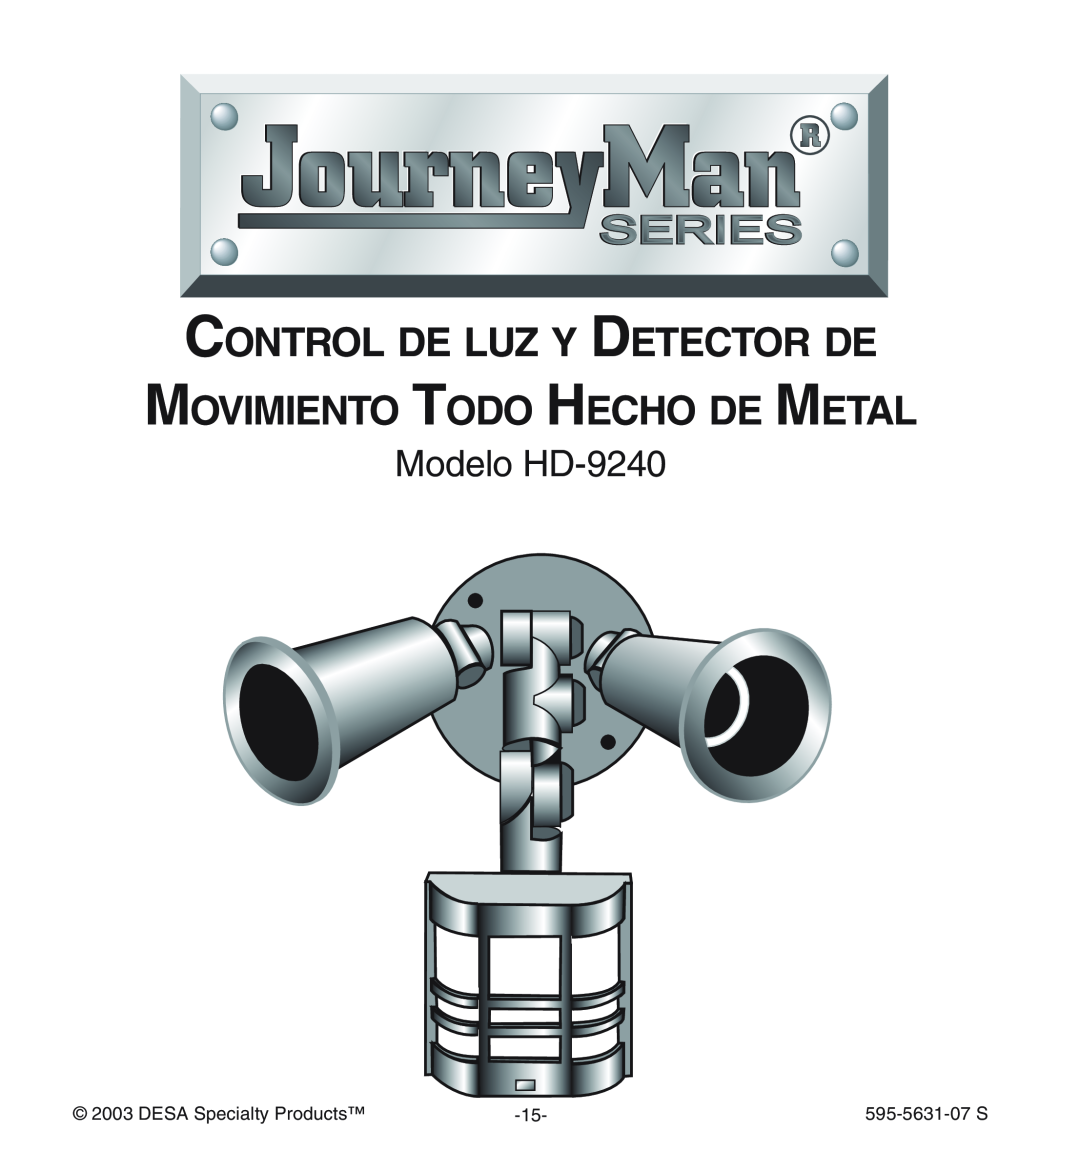 Desa manual Modelo HD-9240, Control De Luz Y Detector De, Movimiento Todo Hecho De Metal, 595-5631-07S 